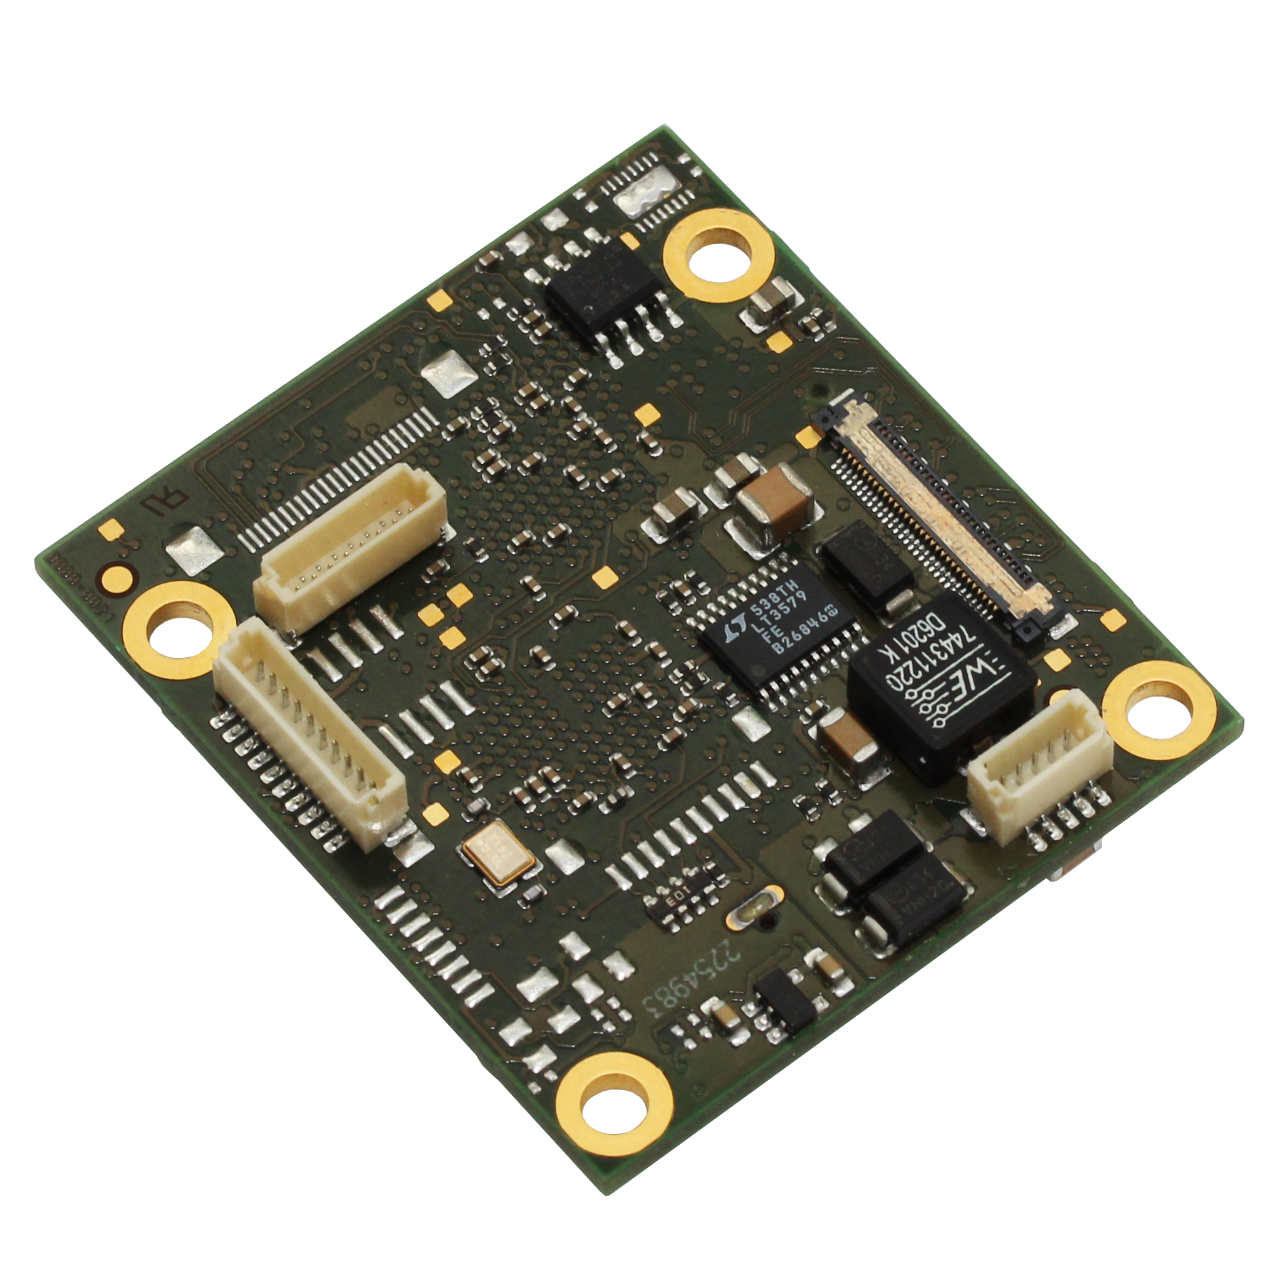 TL6636 | USB 3.0, Vertical Micro B Connector (Trigger)